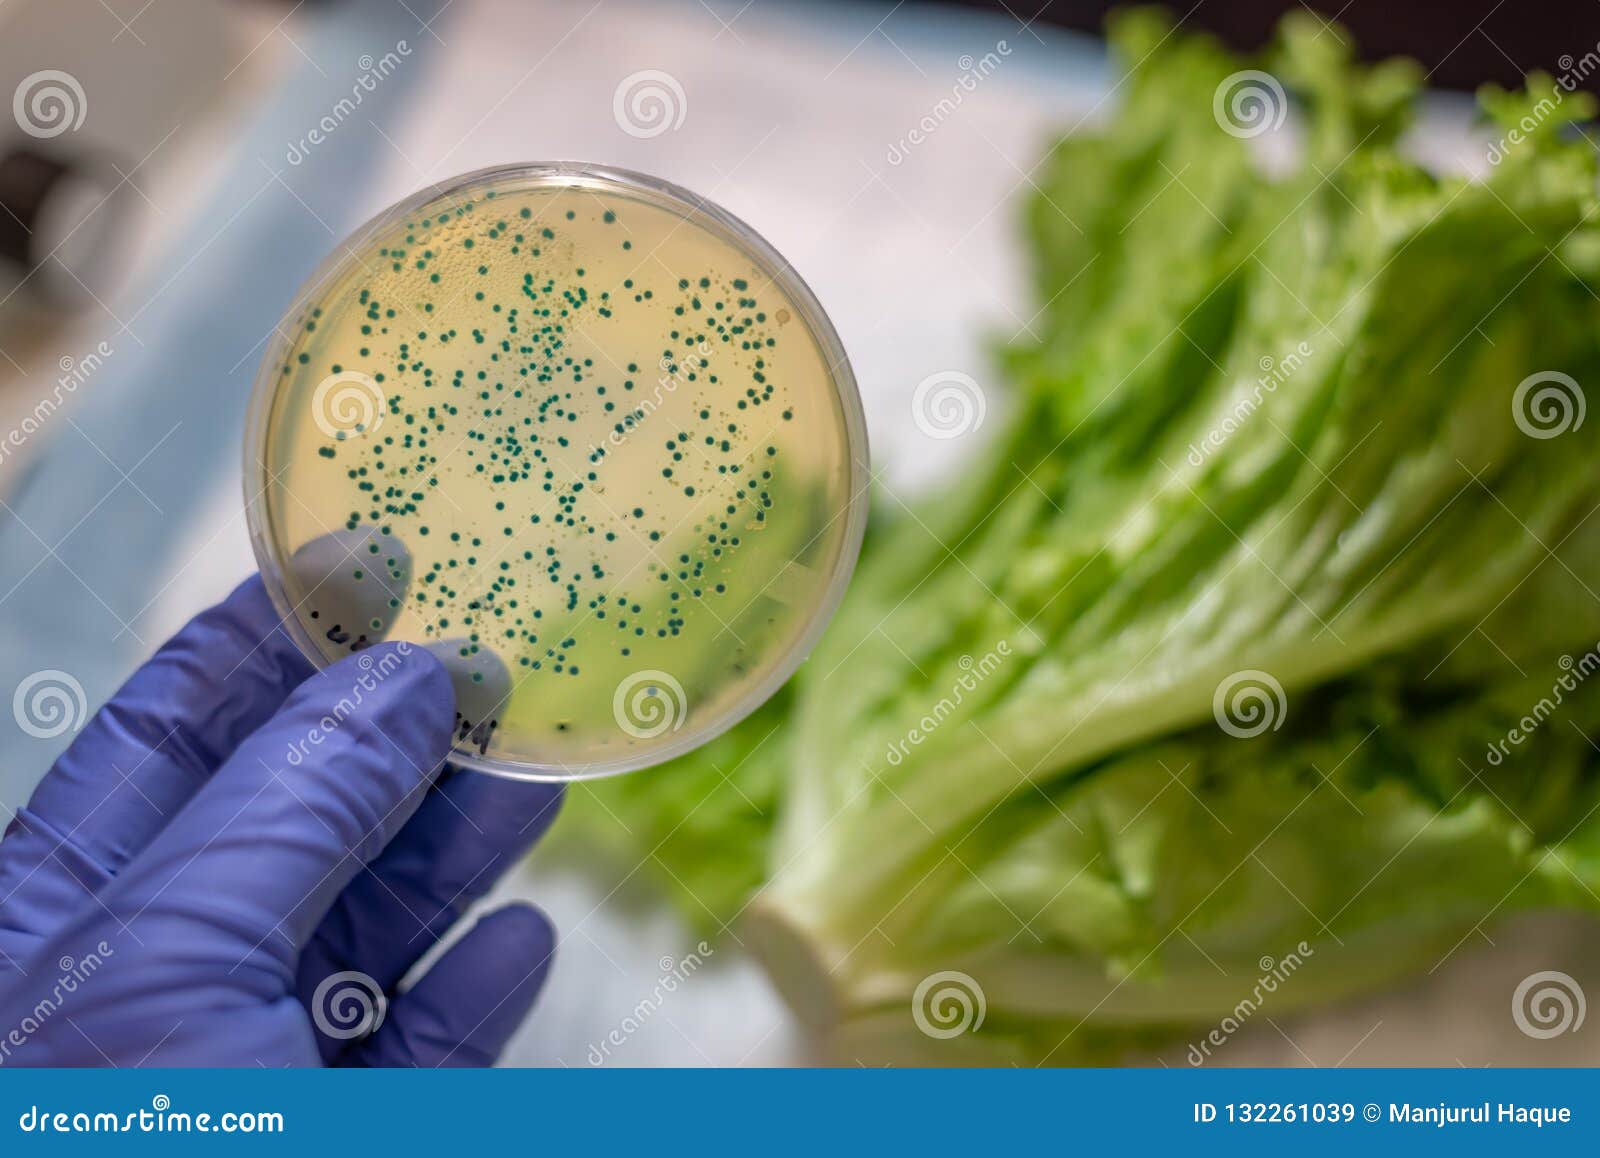 fresh romaine lettuce with e coli culture plate